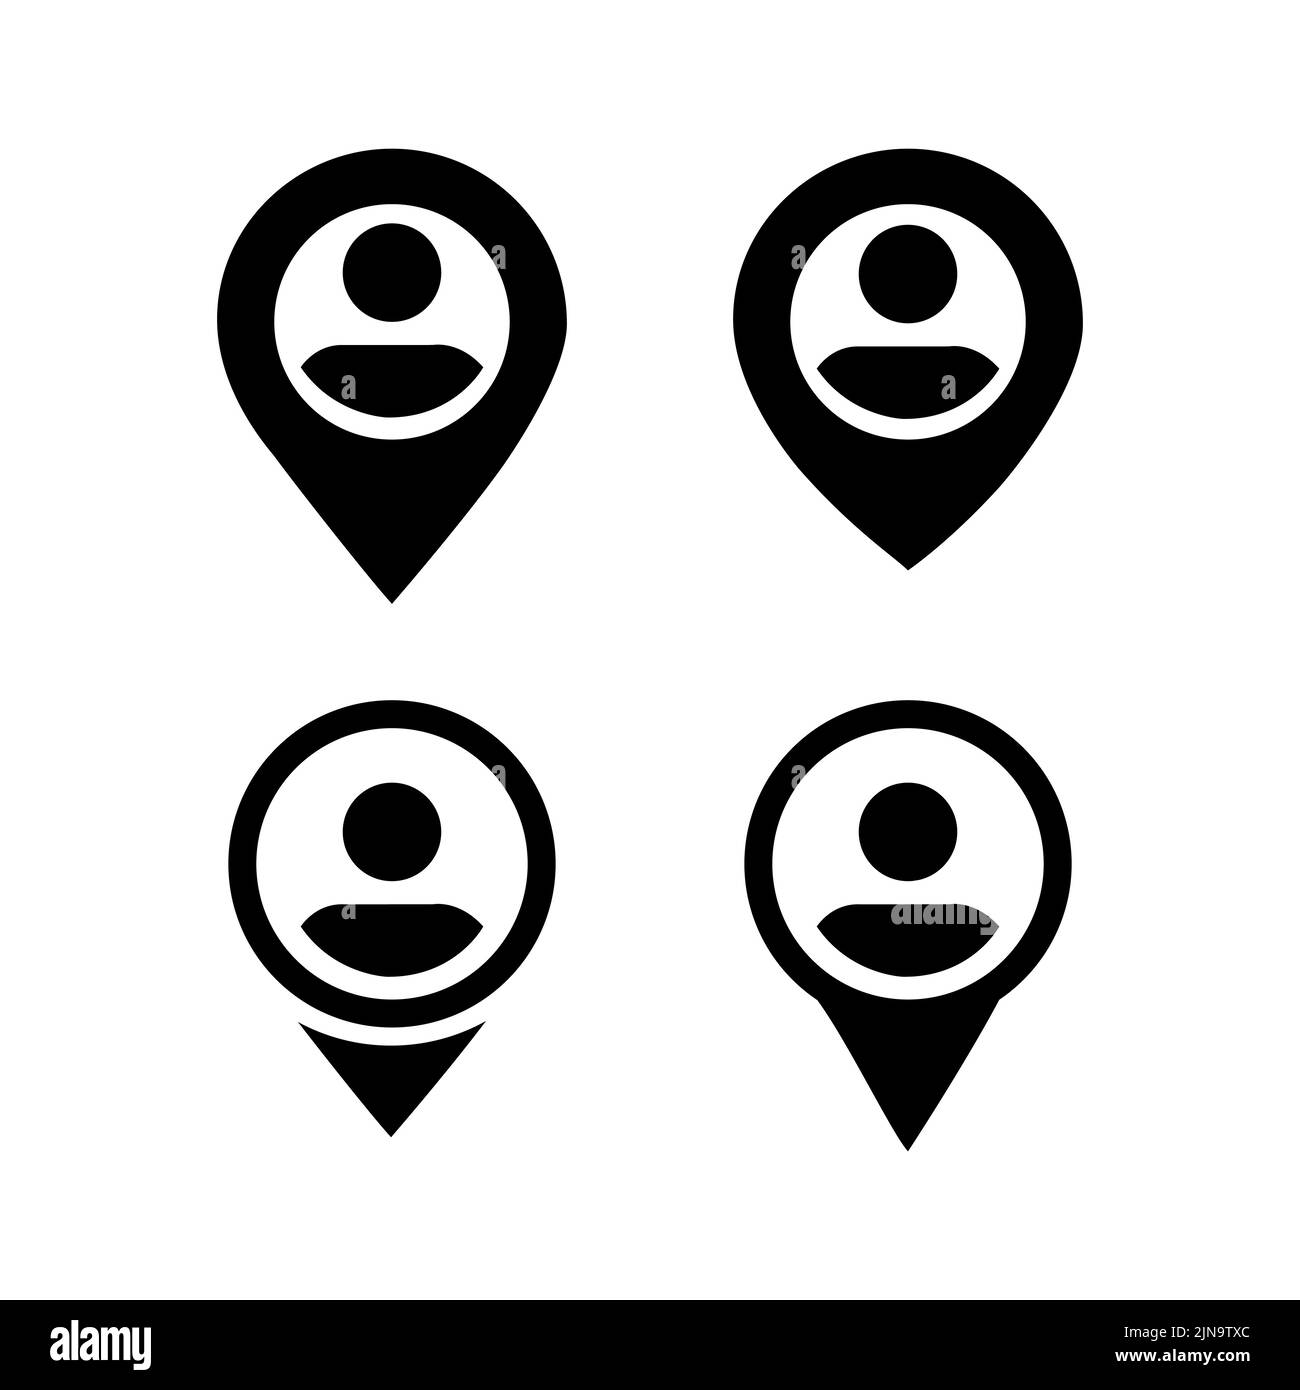 Standortsymbol. Zeigersymbol. PIN-Schild isoliert auf weiß. Mann Standort Navigationskarte Simbol im flachen Stil einfaches Ort Symbol in schwarz Vektor-illustrat Stock Vektor